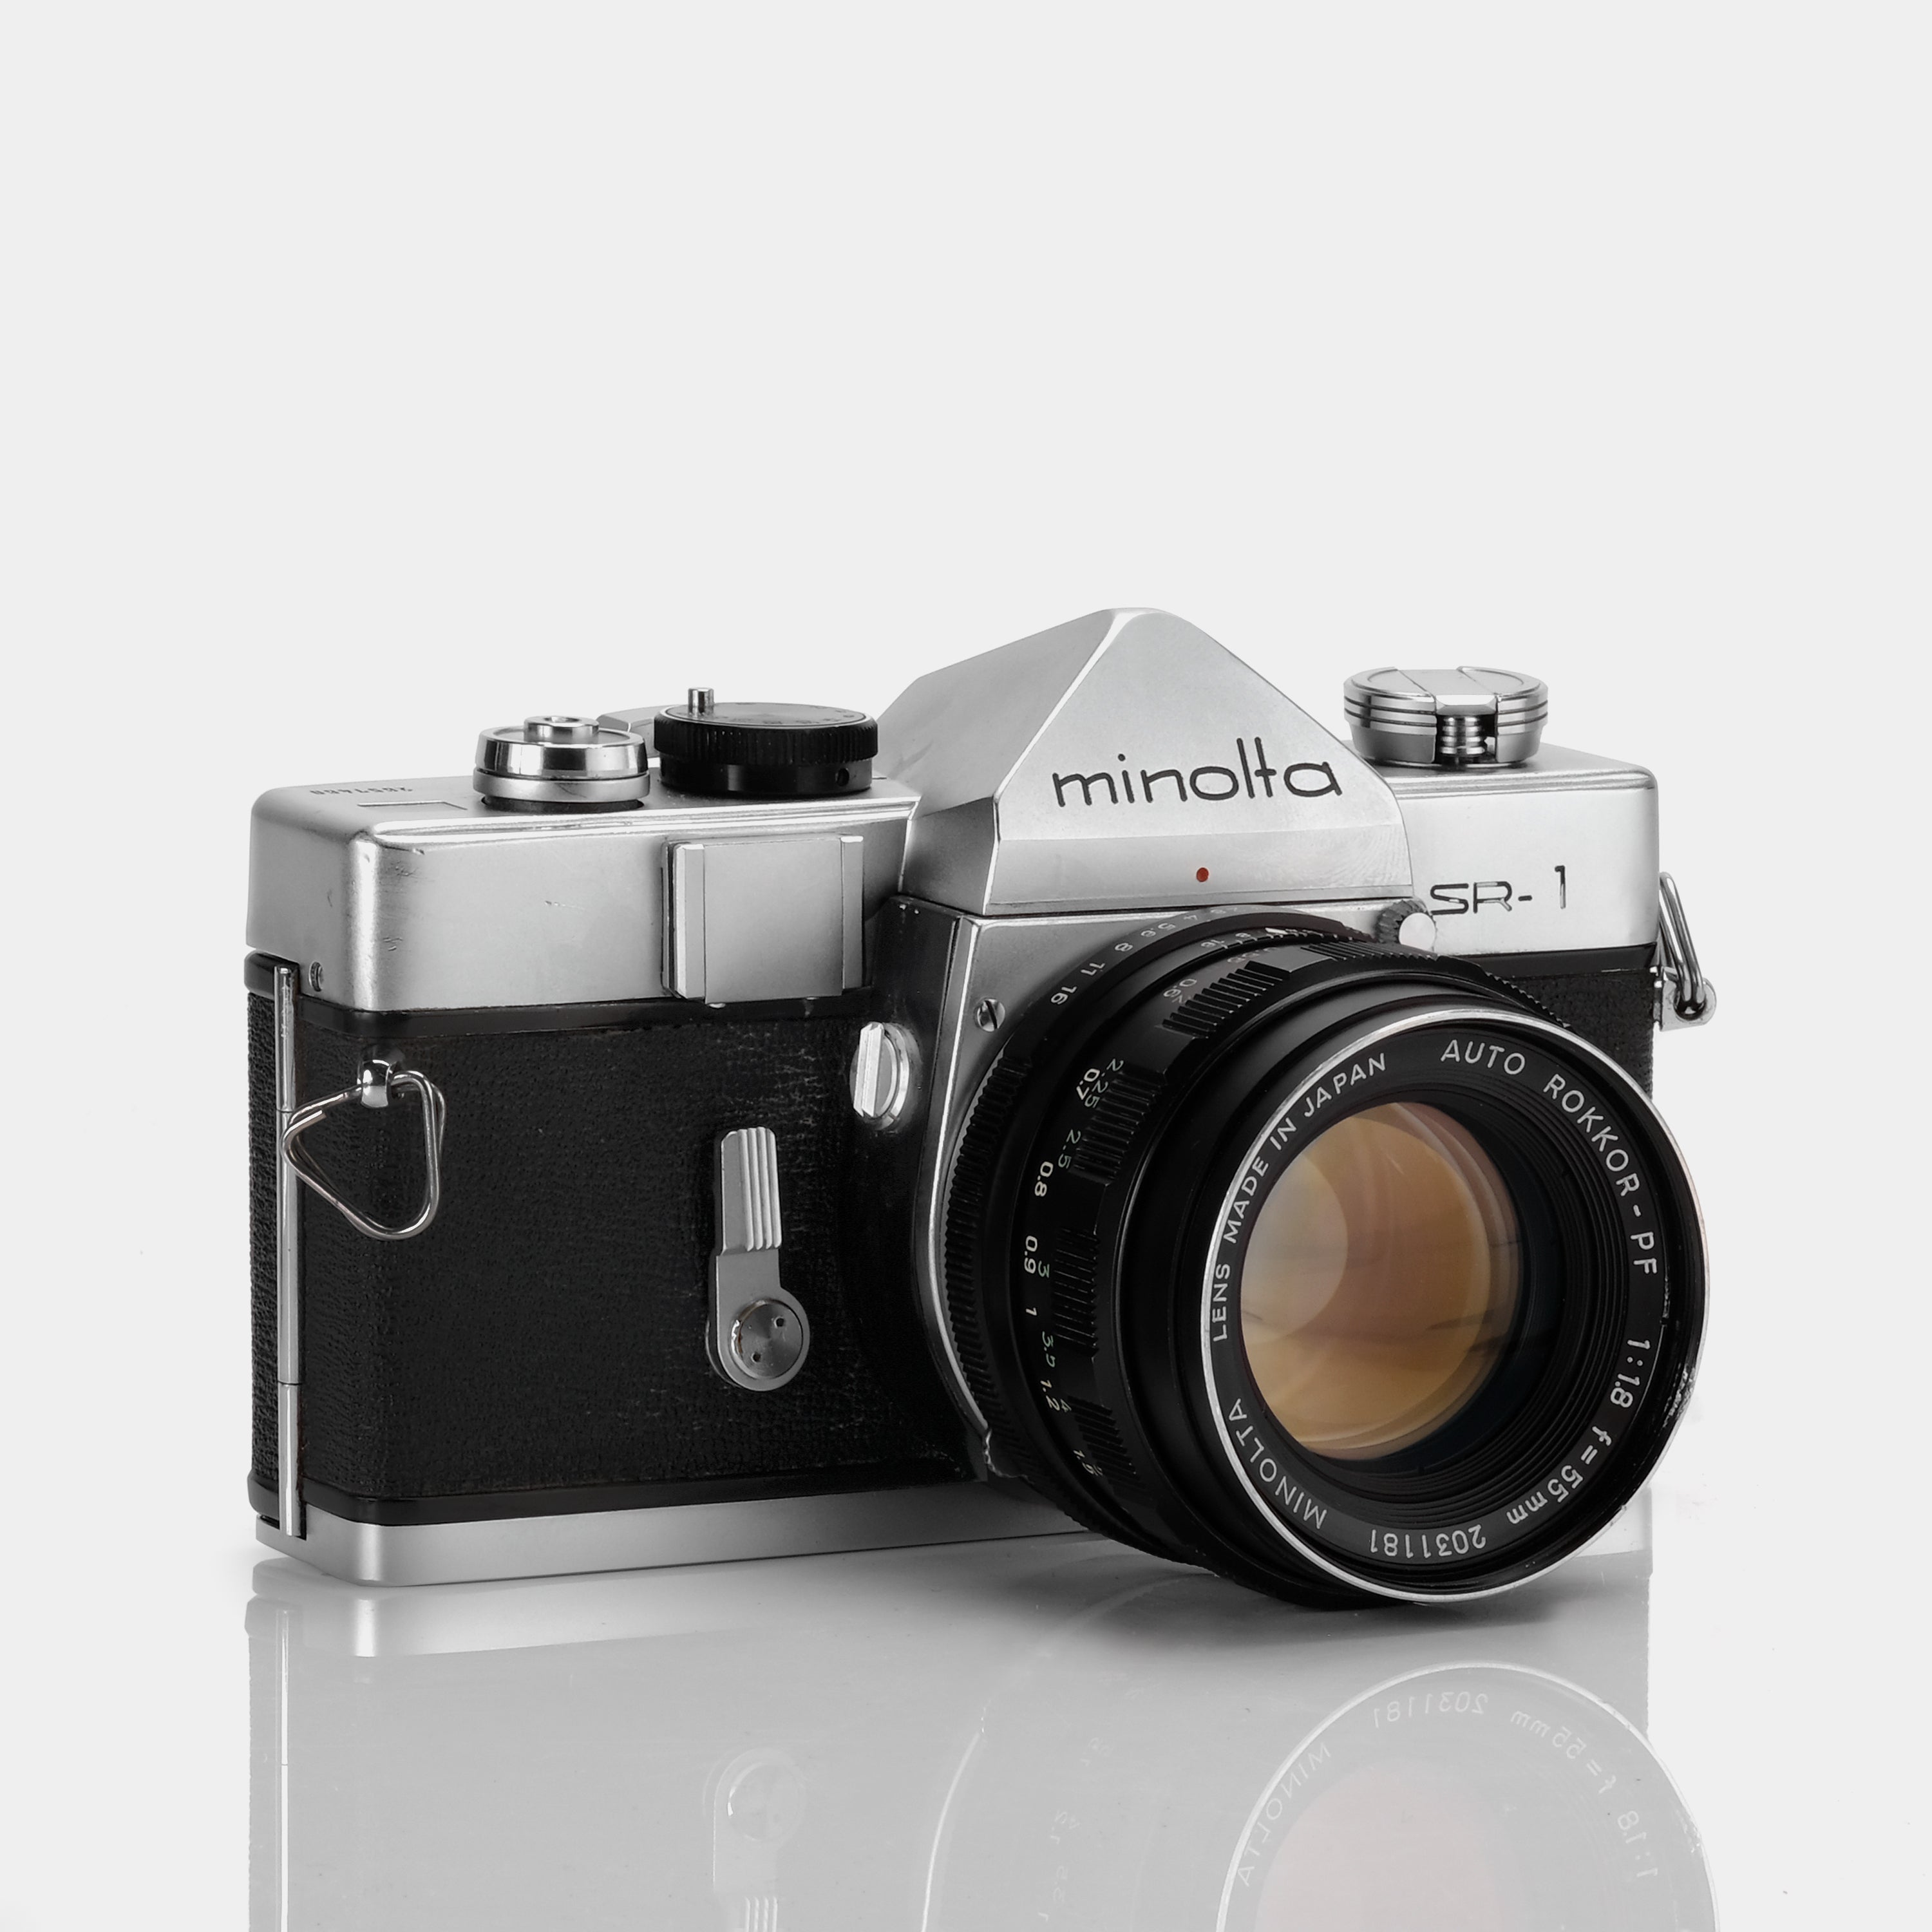 Minolta SR-1 SLR 35mm Film Camera with 55mm 1:1.8 Auto Rokkor-PF Lens